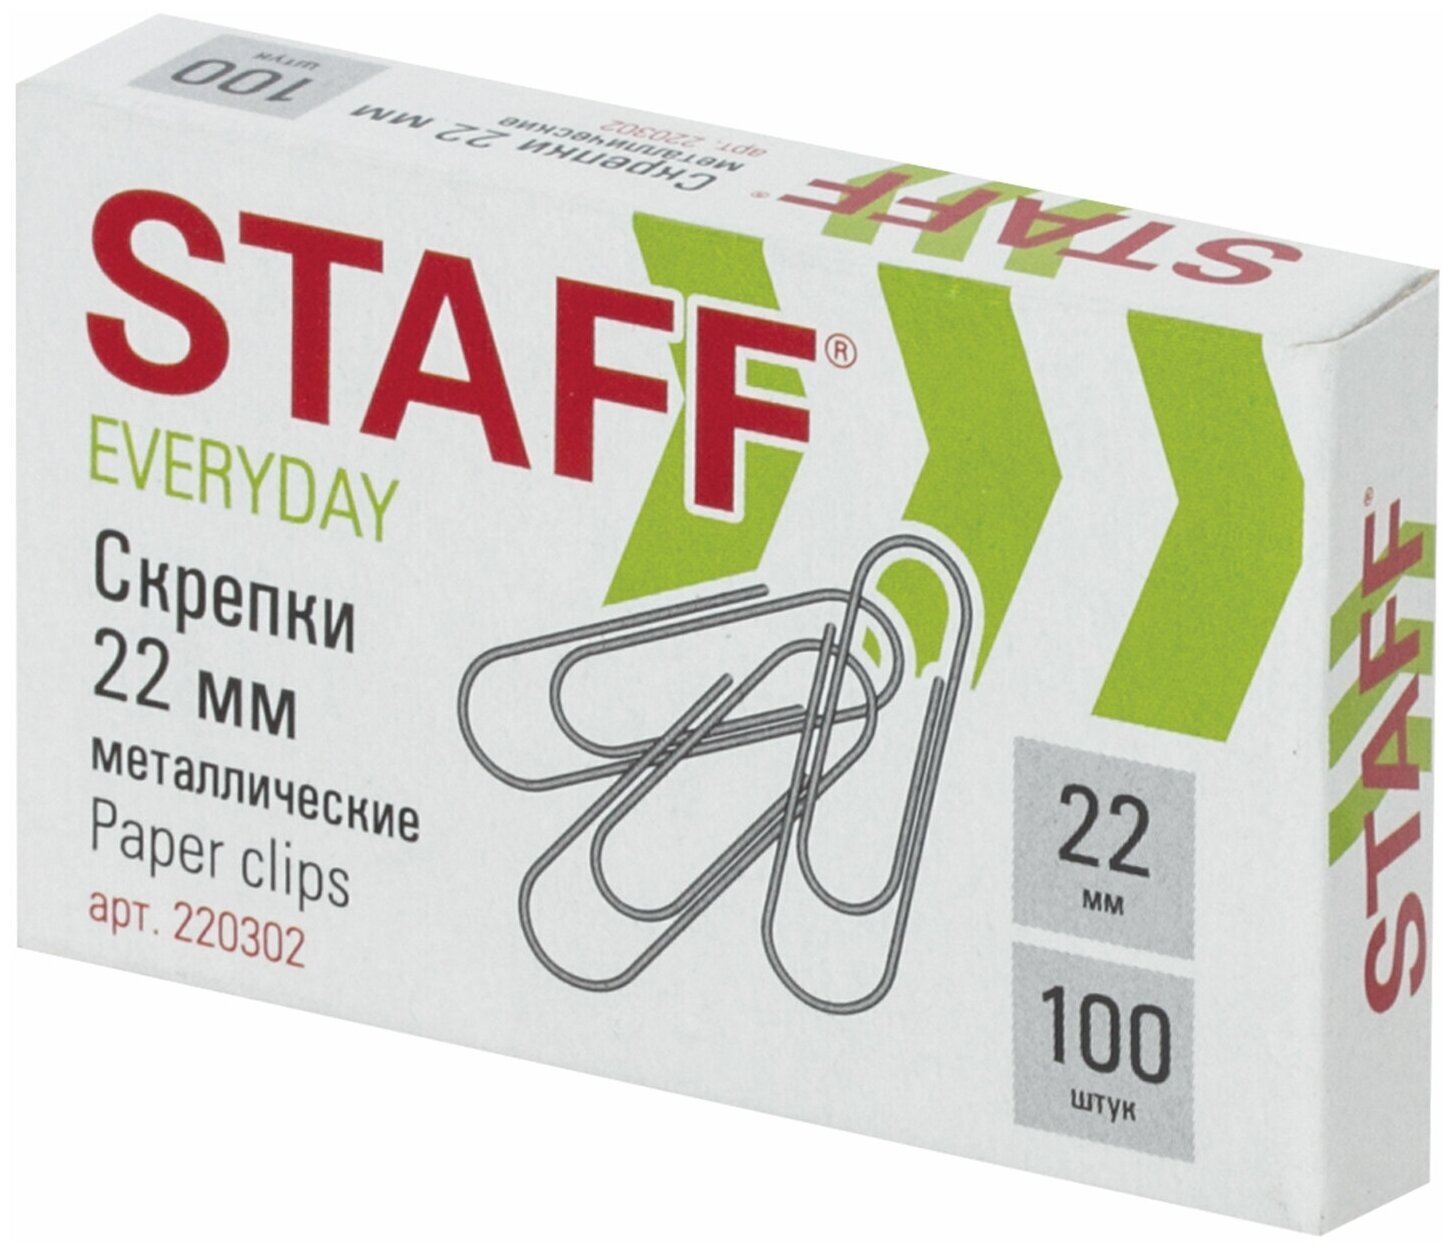 Скрепки STAFF "EVERYDAY", 22 мм, металлические, 100 шт, в картонной коробке, Россия, 220302